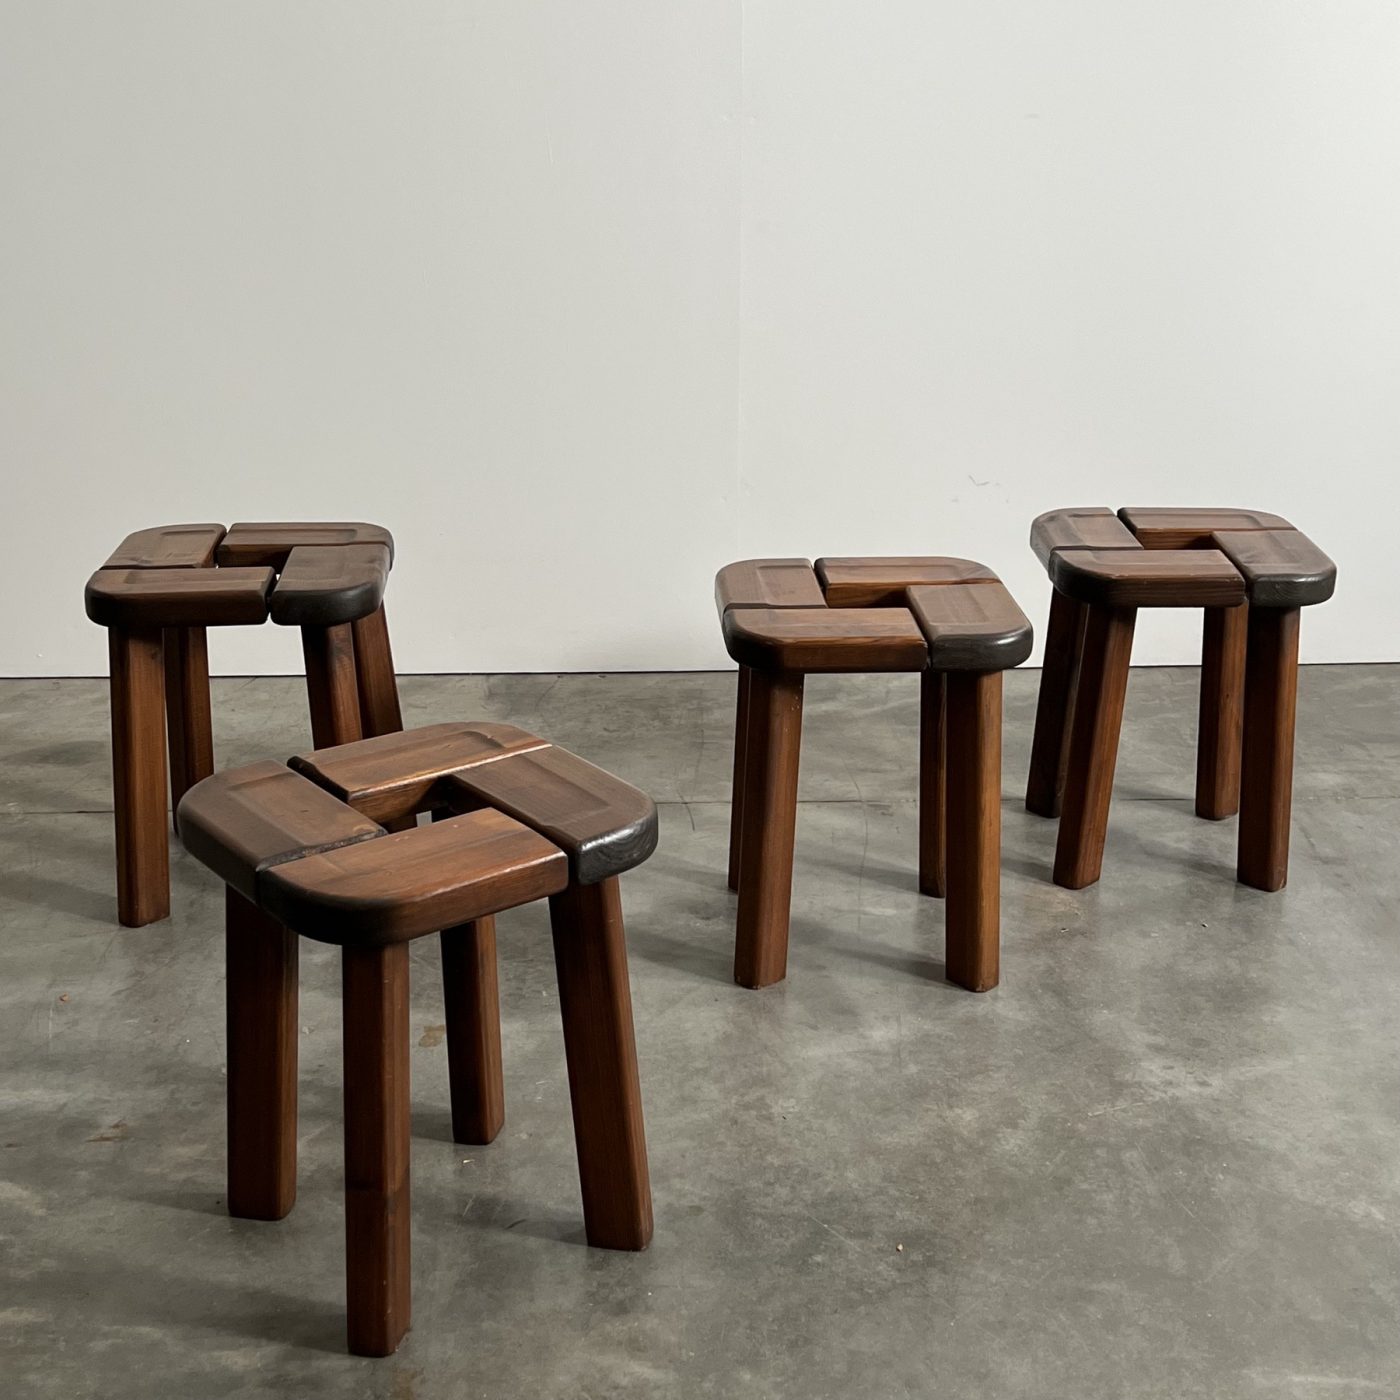 objet-vagabond-vintage-stools0005